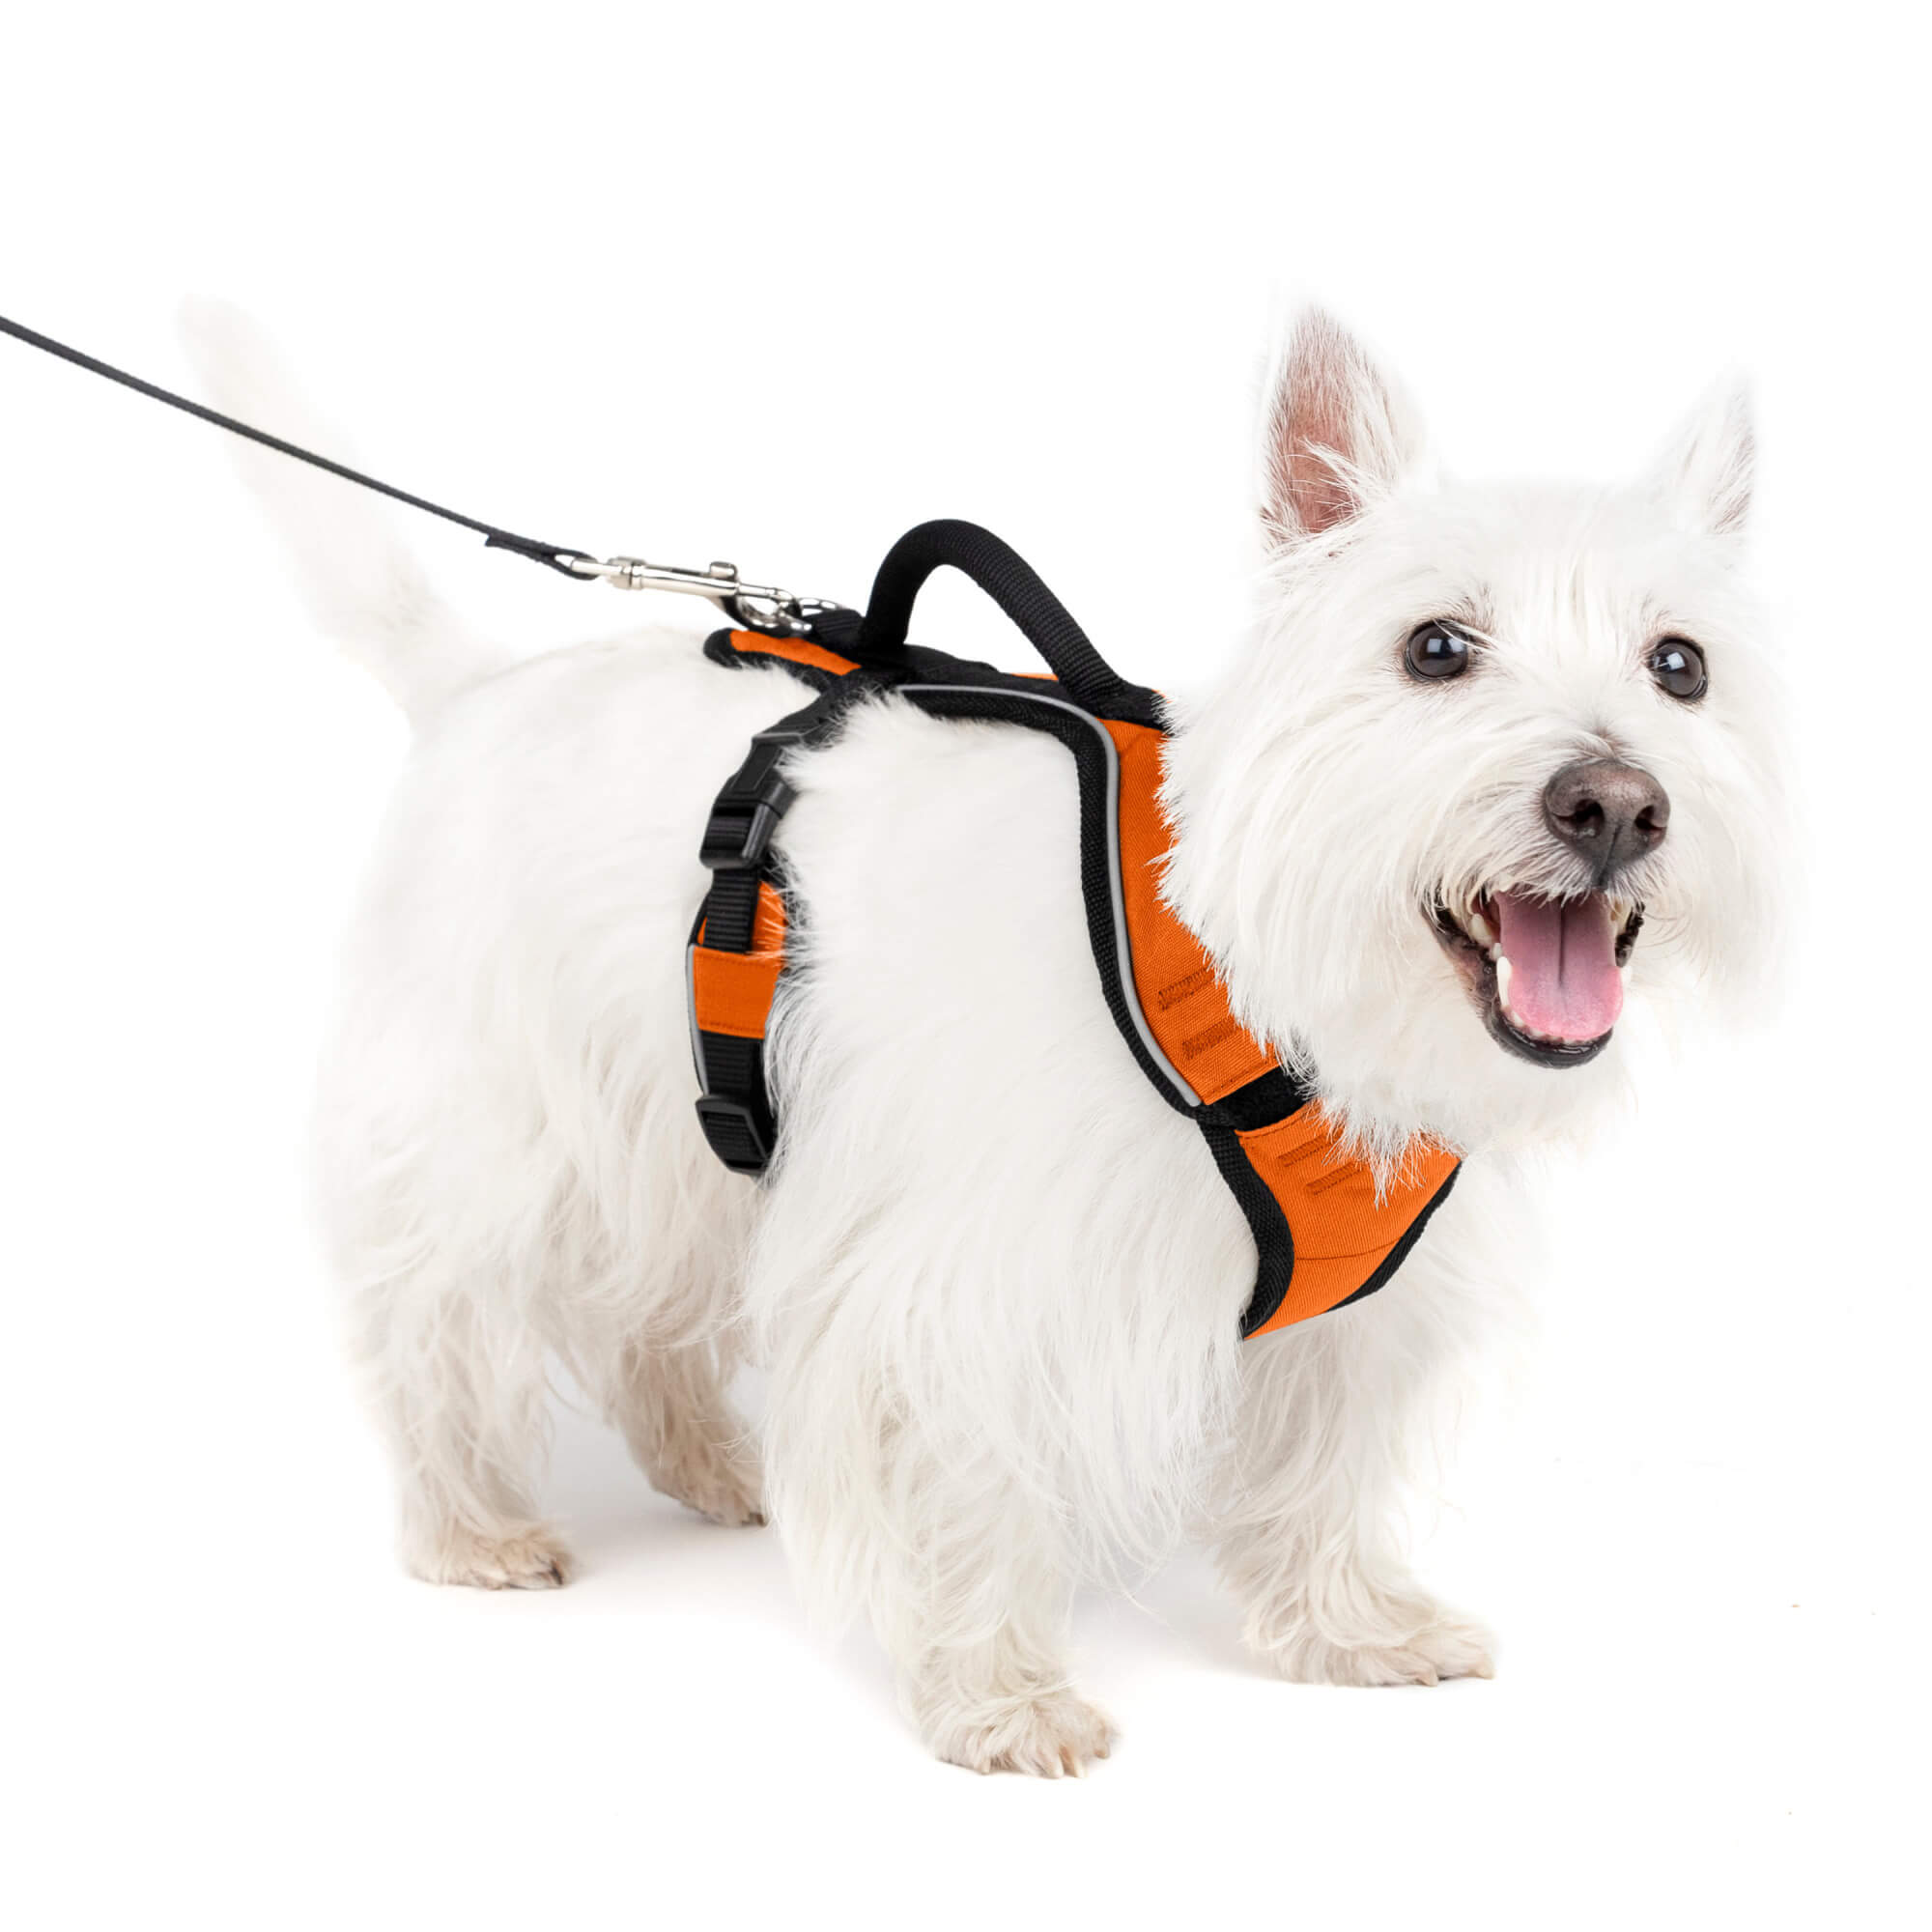 Dog wearing orange petsafe easysport harness in small